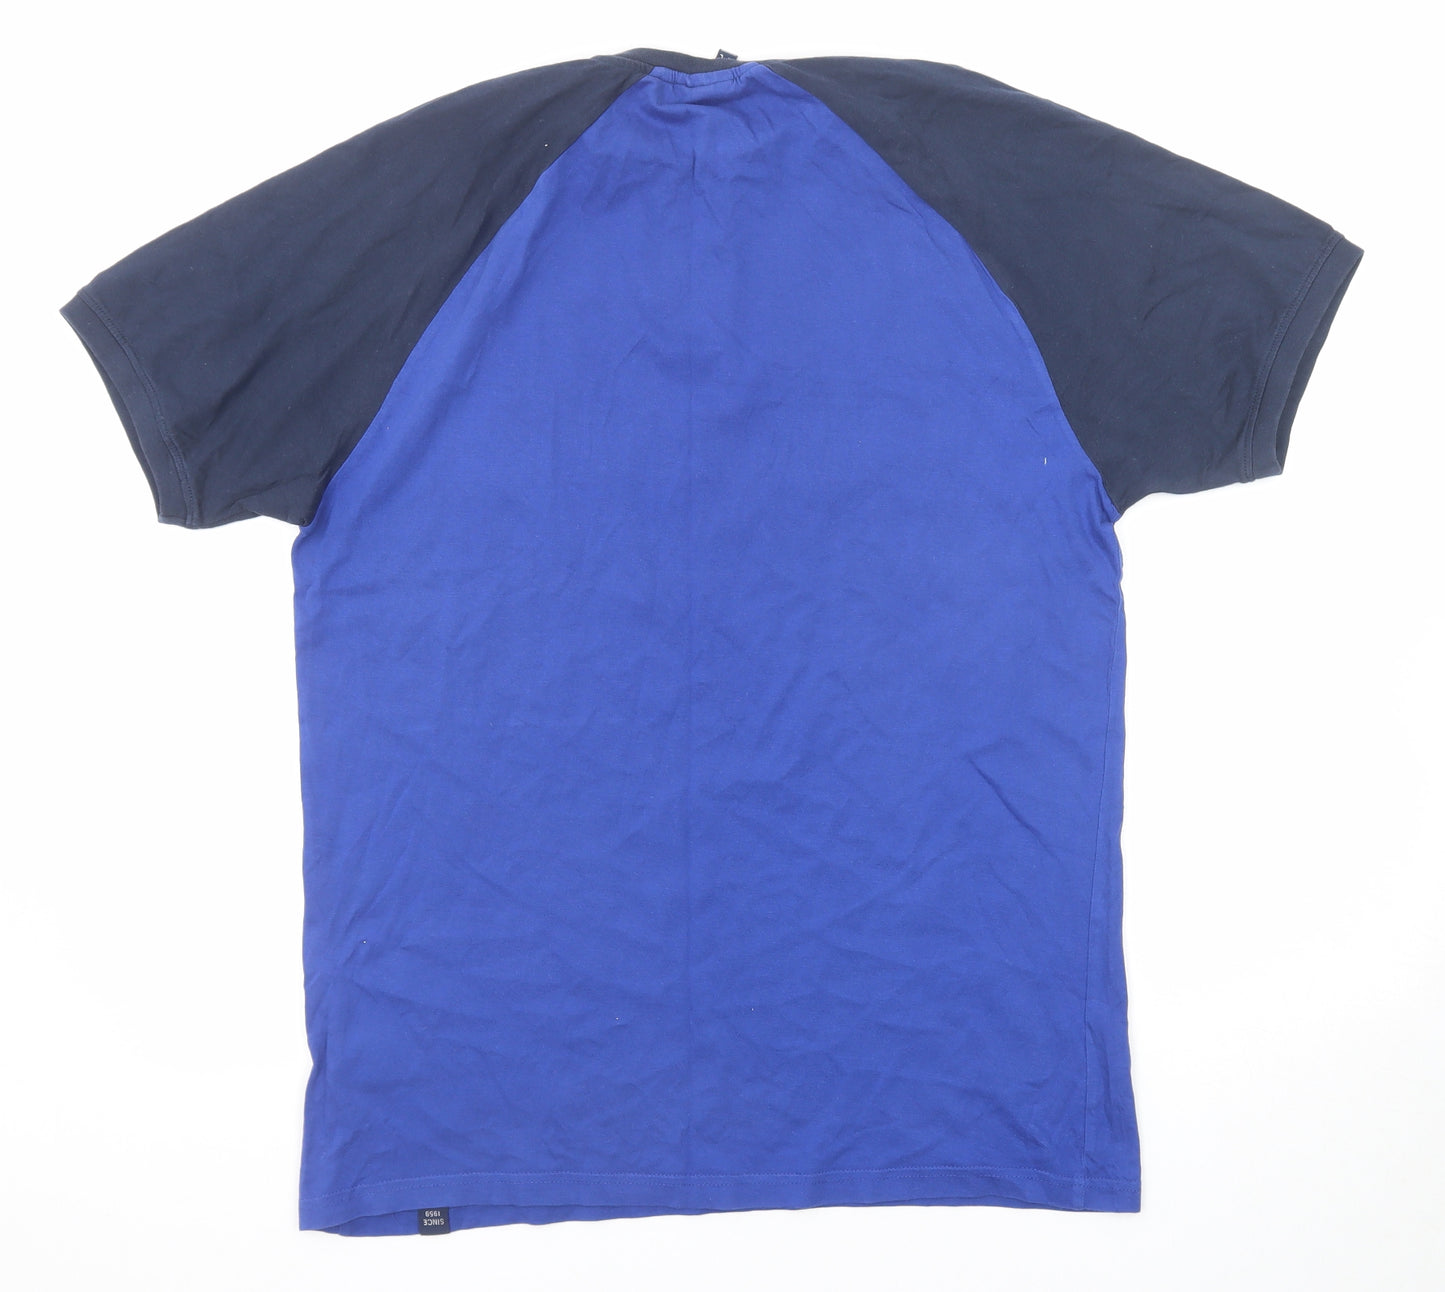 ellesse Mens Blue Colourblock Cotton T-Shirt Size XL Round Neck